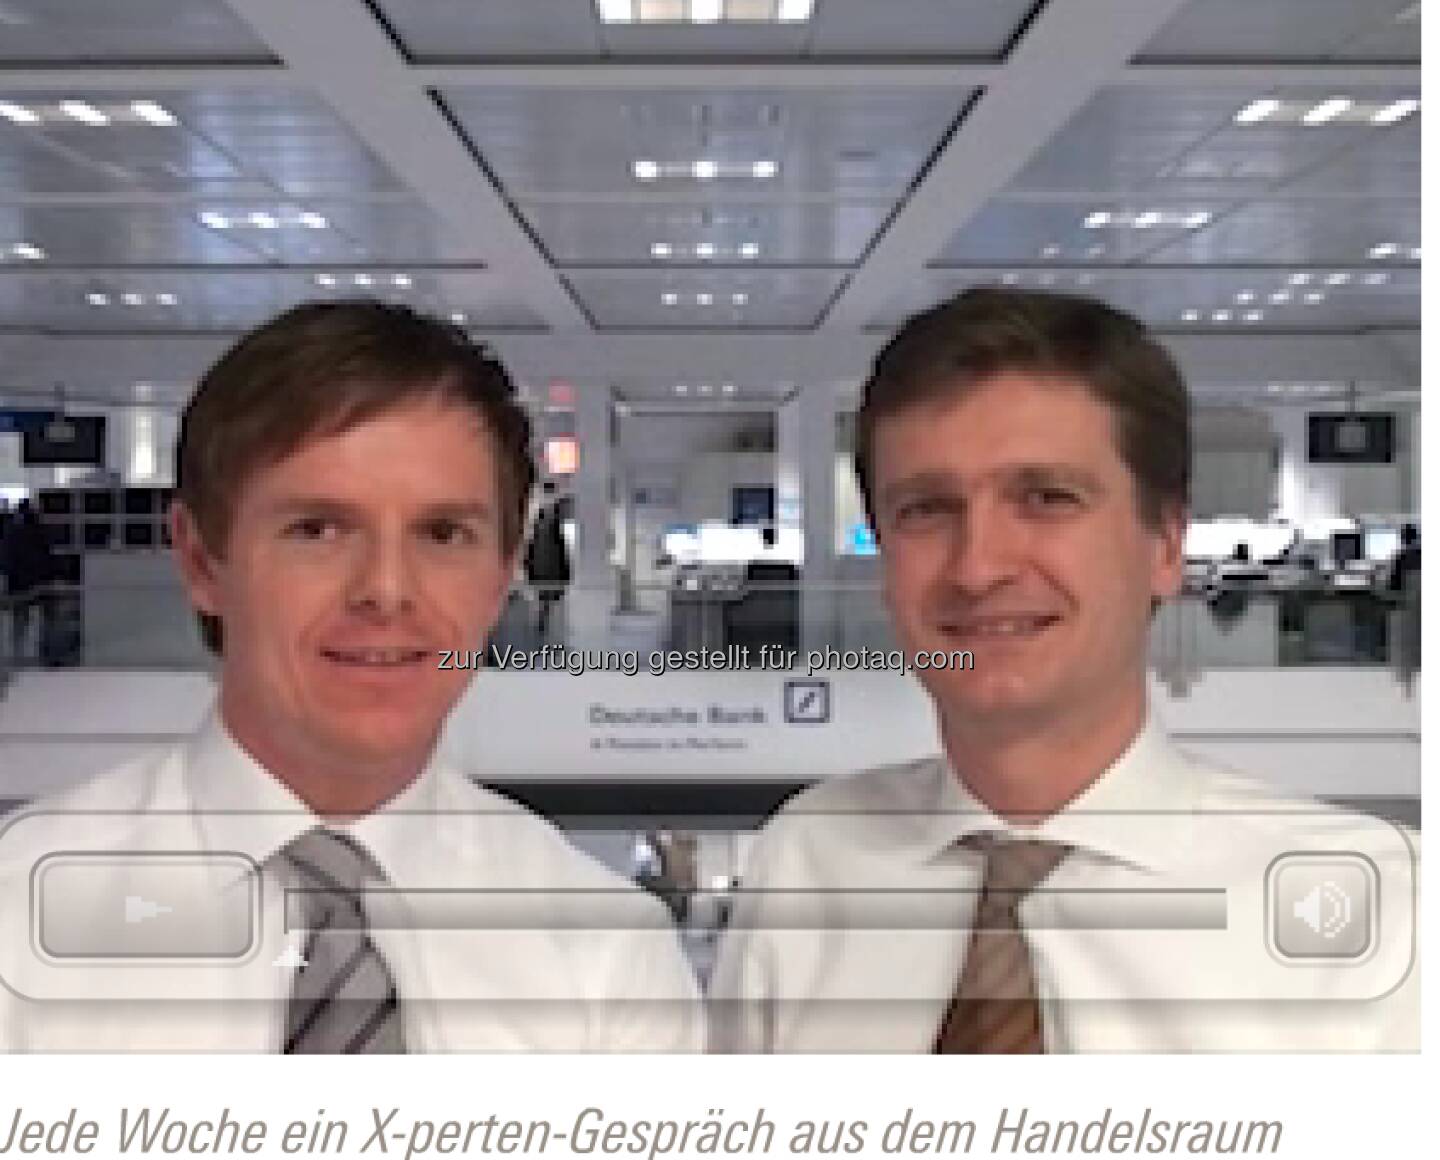 X-press Trends Newsletter von db-X markets. Christian-Hendrik Knappe und Mathias Schölzel mit u.a. kompetent-witzigen Know-how-Videos  http://staging.x-markets-db.com/DE/newsletter/trends/xpresstrends/pdf.html